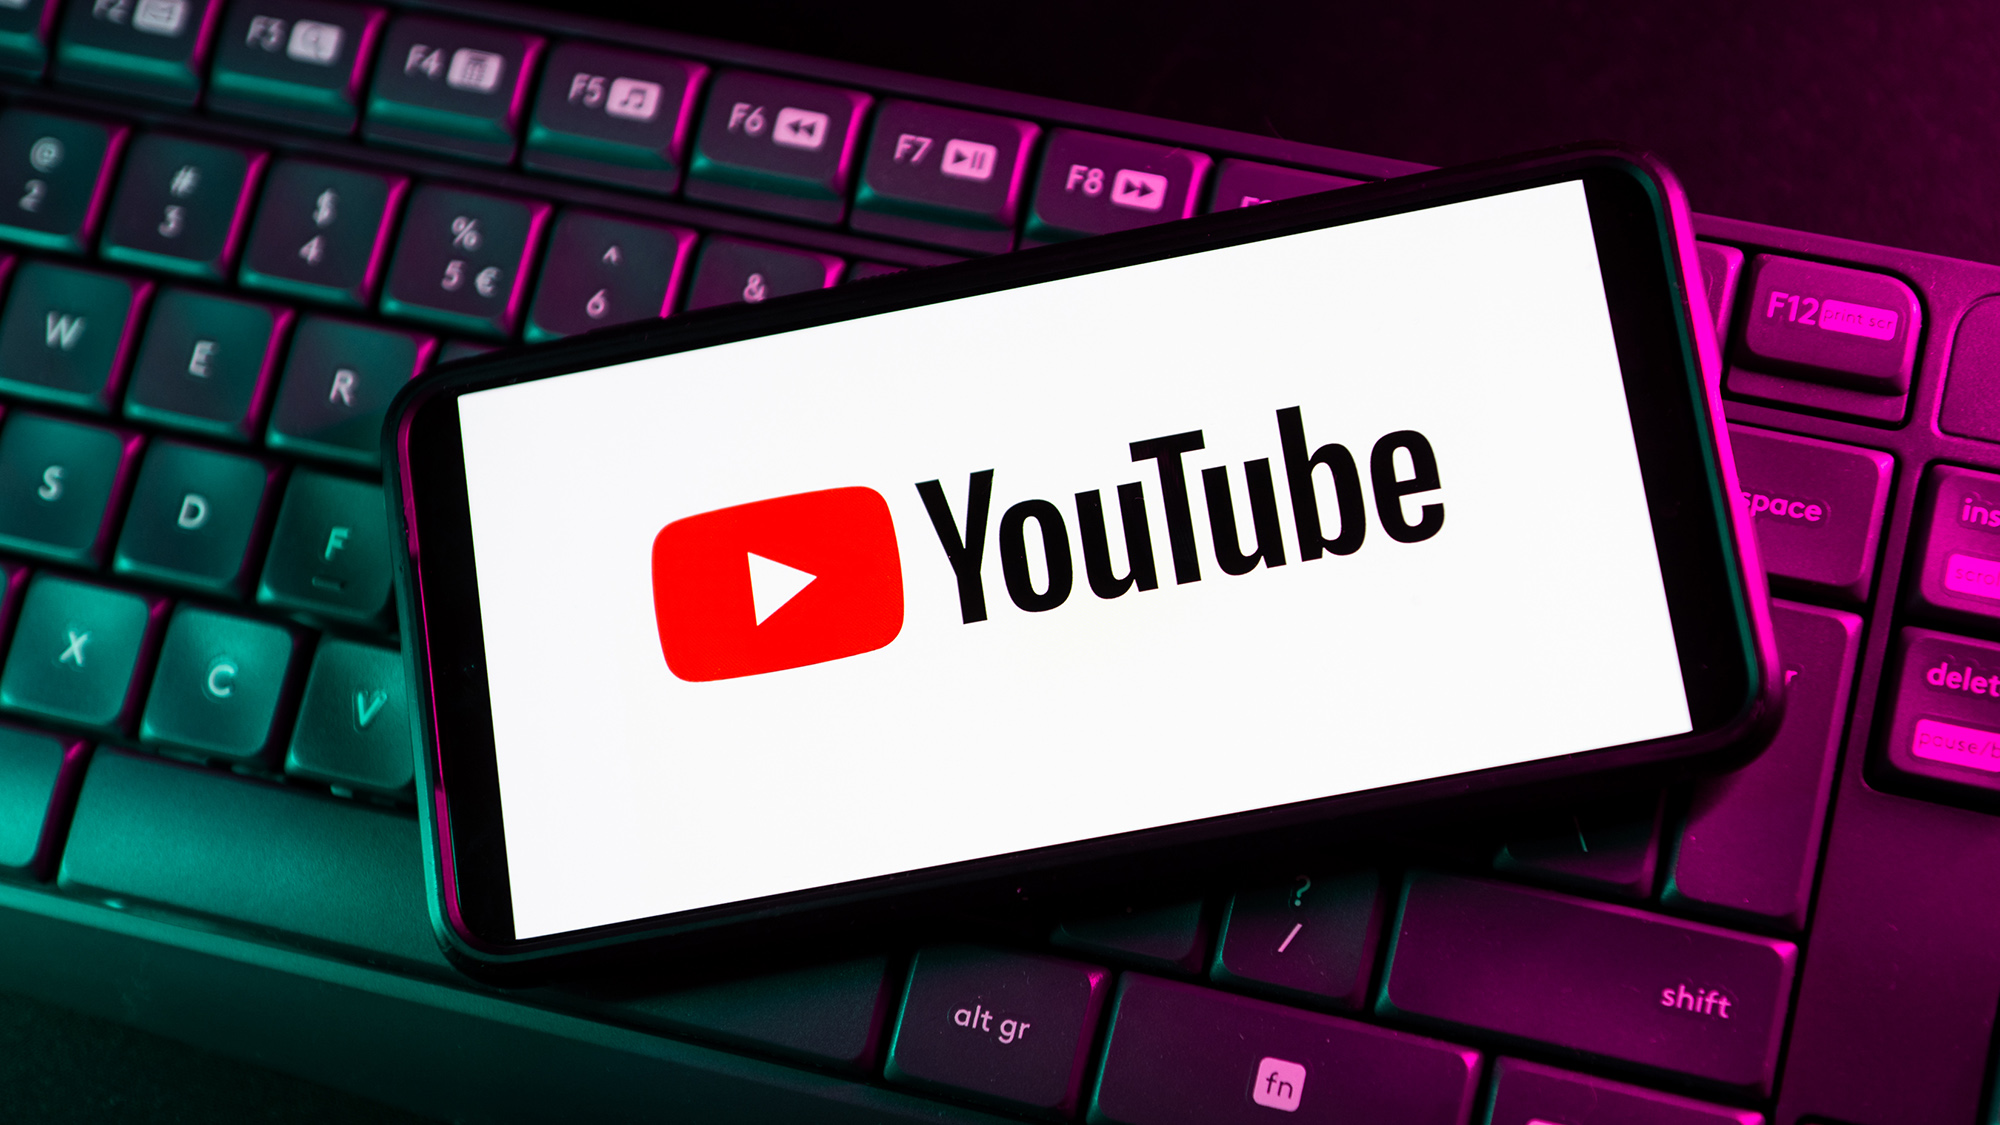 Le logo YouTube apparaît sur un téléphone au-dessus d'un clavier